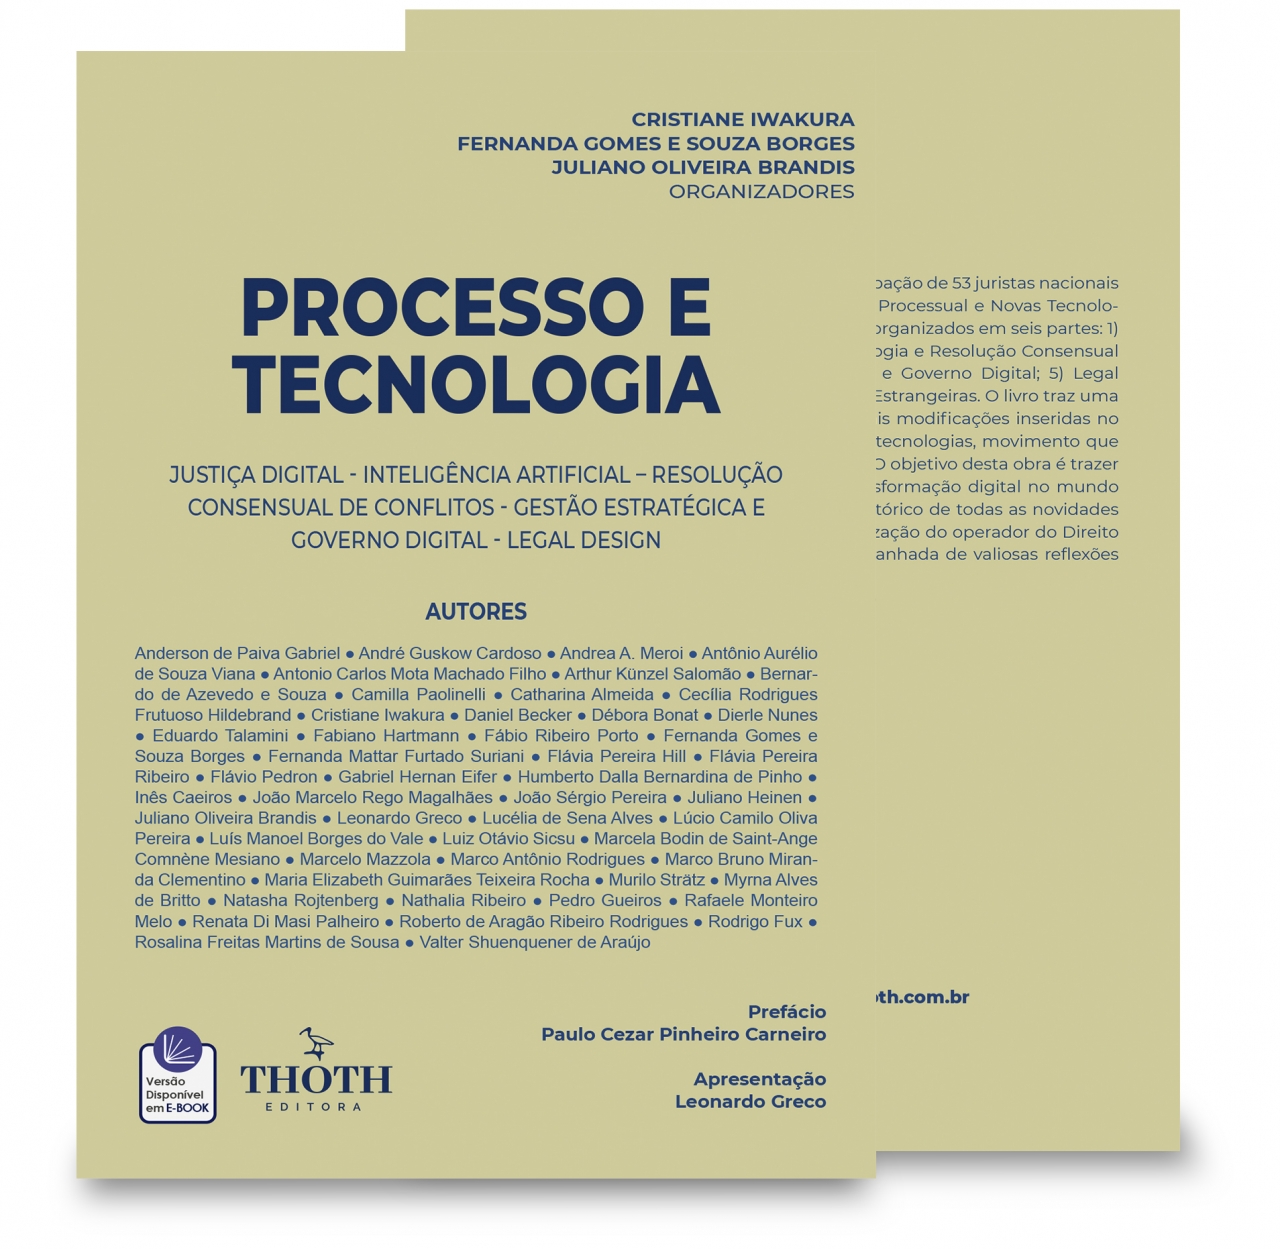 Tecnologia no Brasil: Tributando produtos e serviços